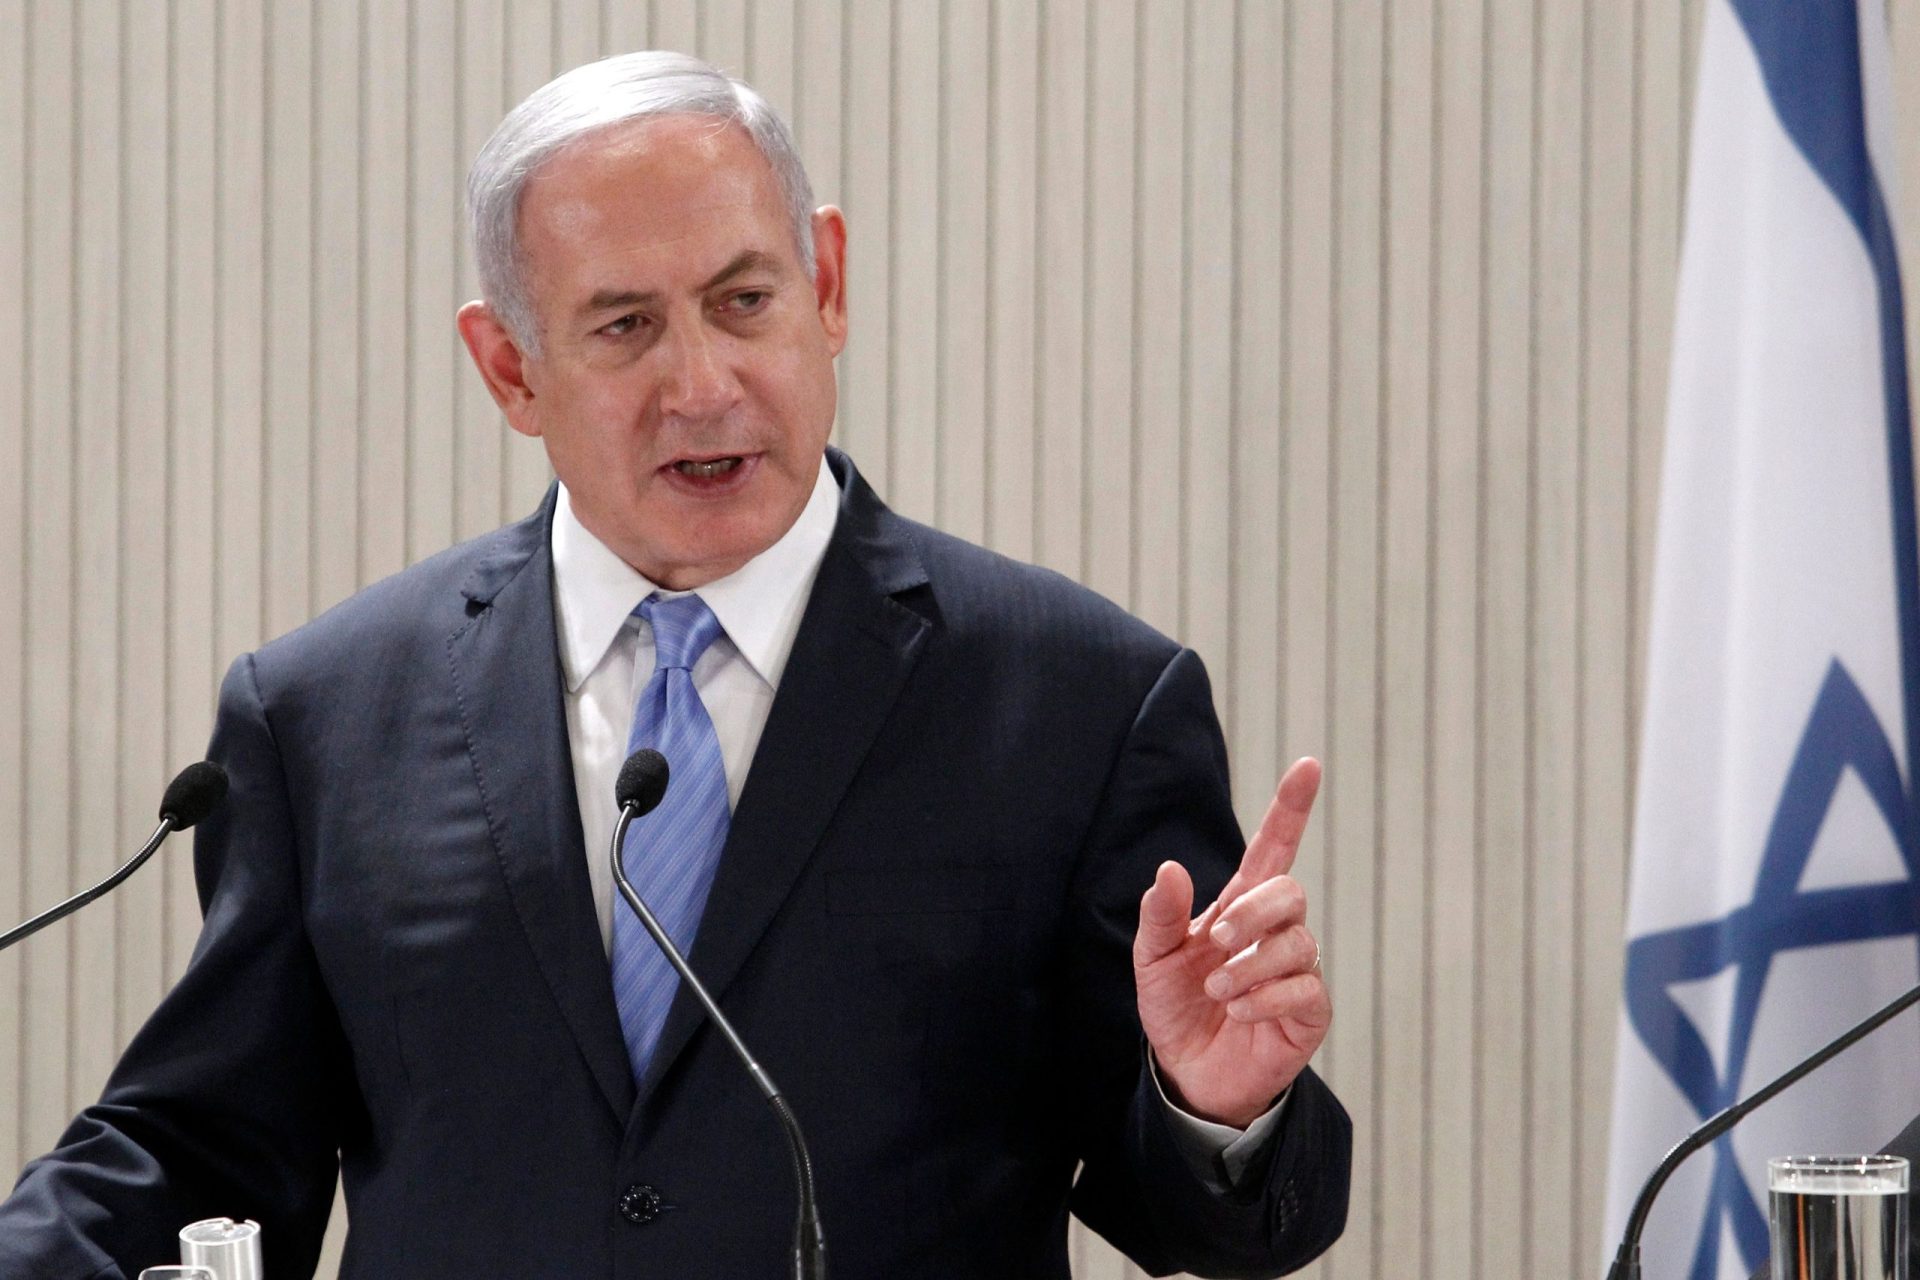 Netanyahu espera provas sobre envio de medicamentos para reféns